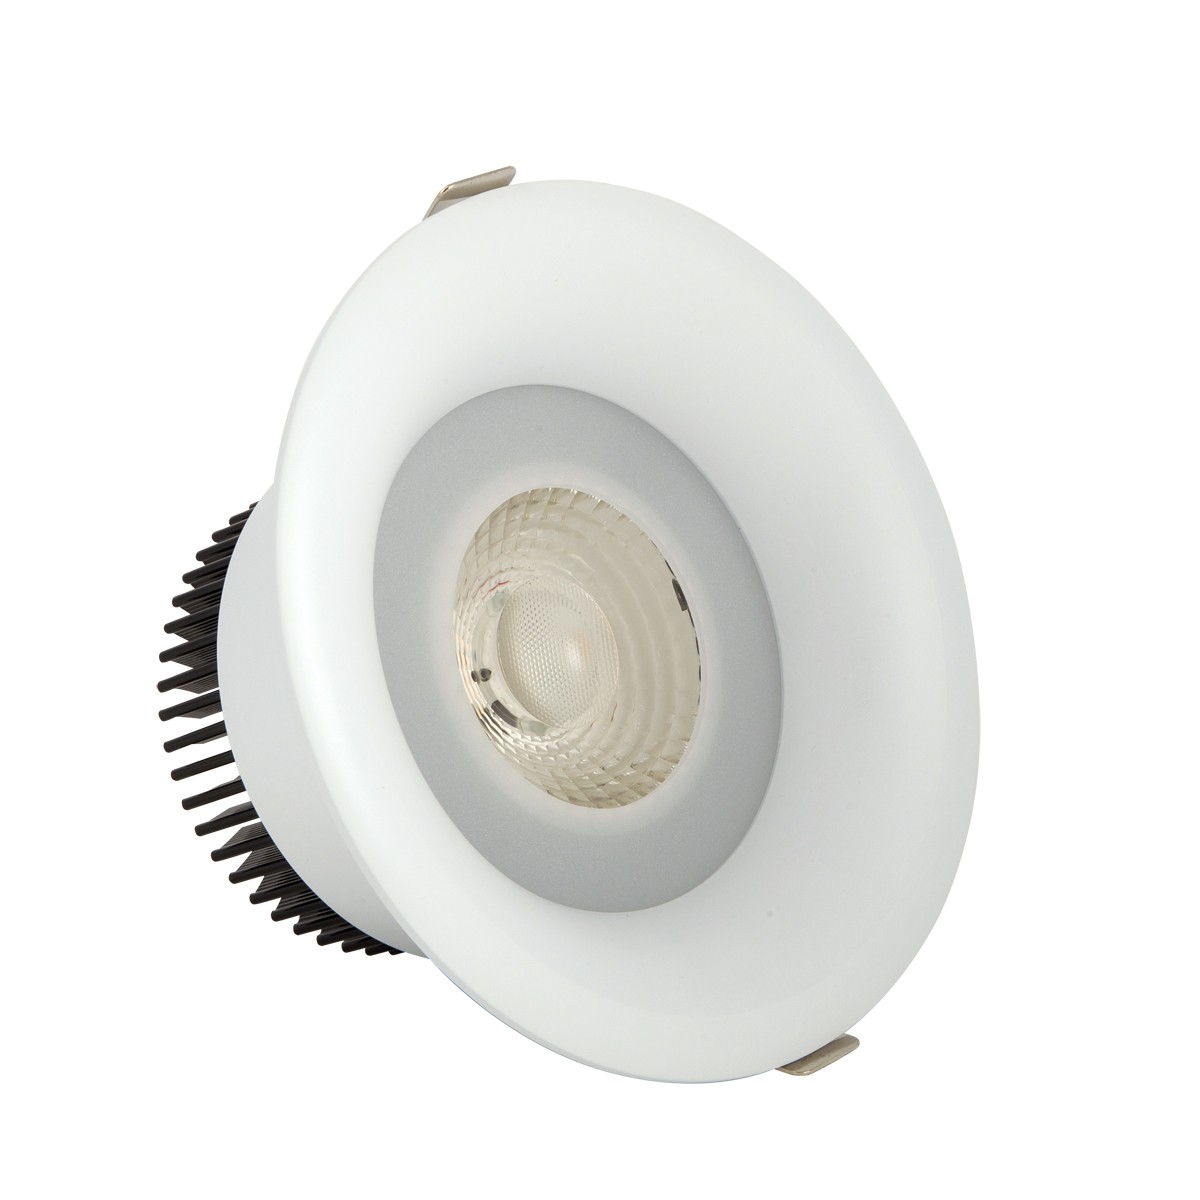 Φωτιστικό downlight στρογγυλό  λευκού χρώματος 15W 4000K 1350 lumen με ενσωματωμένο λαμπτήρα 36D VK/04149/W/C/36